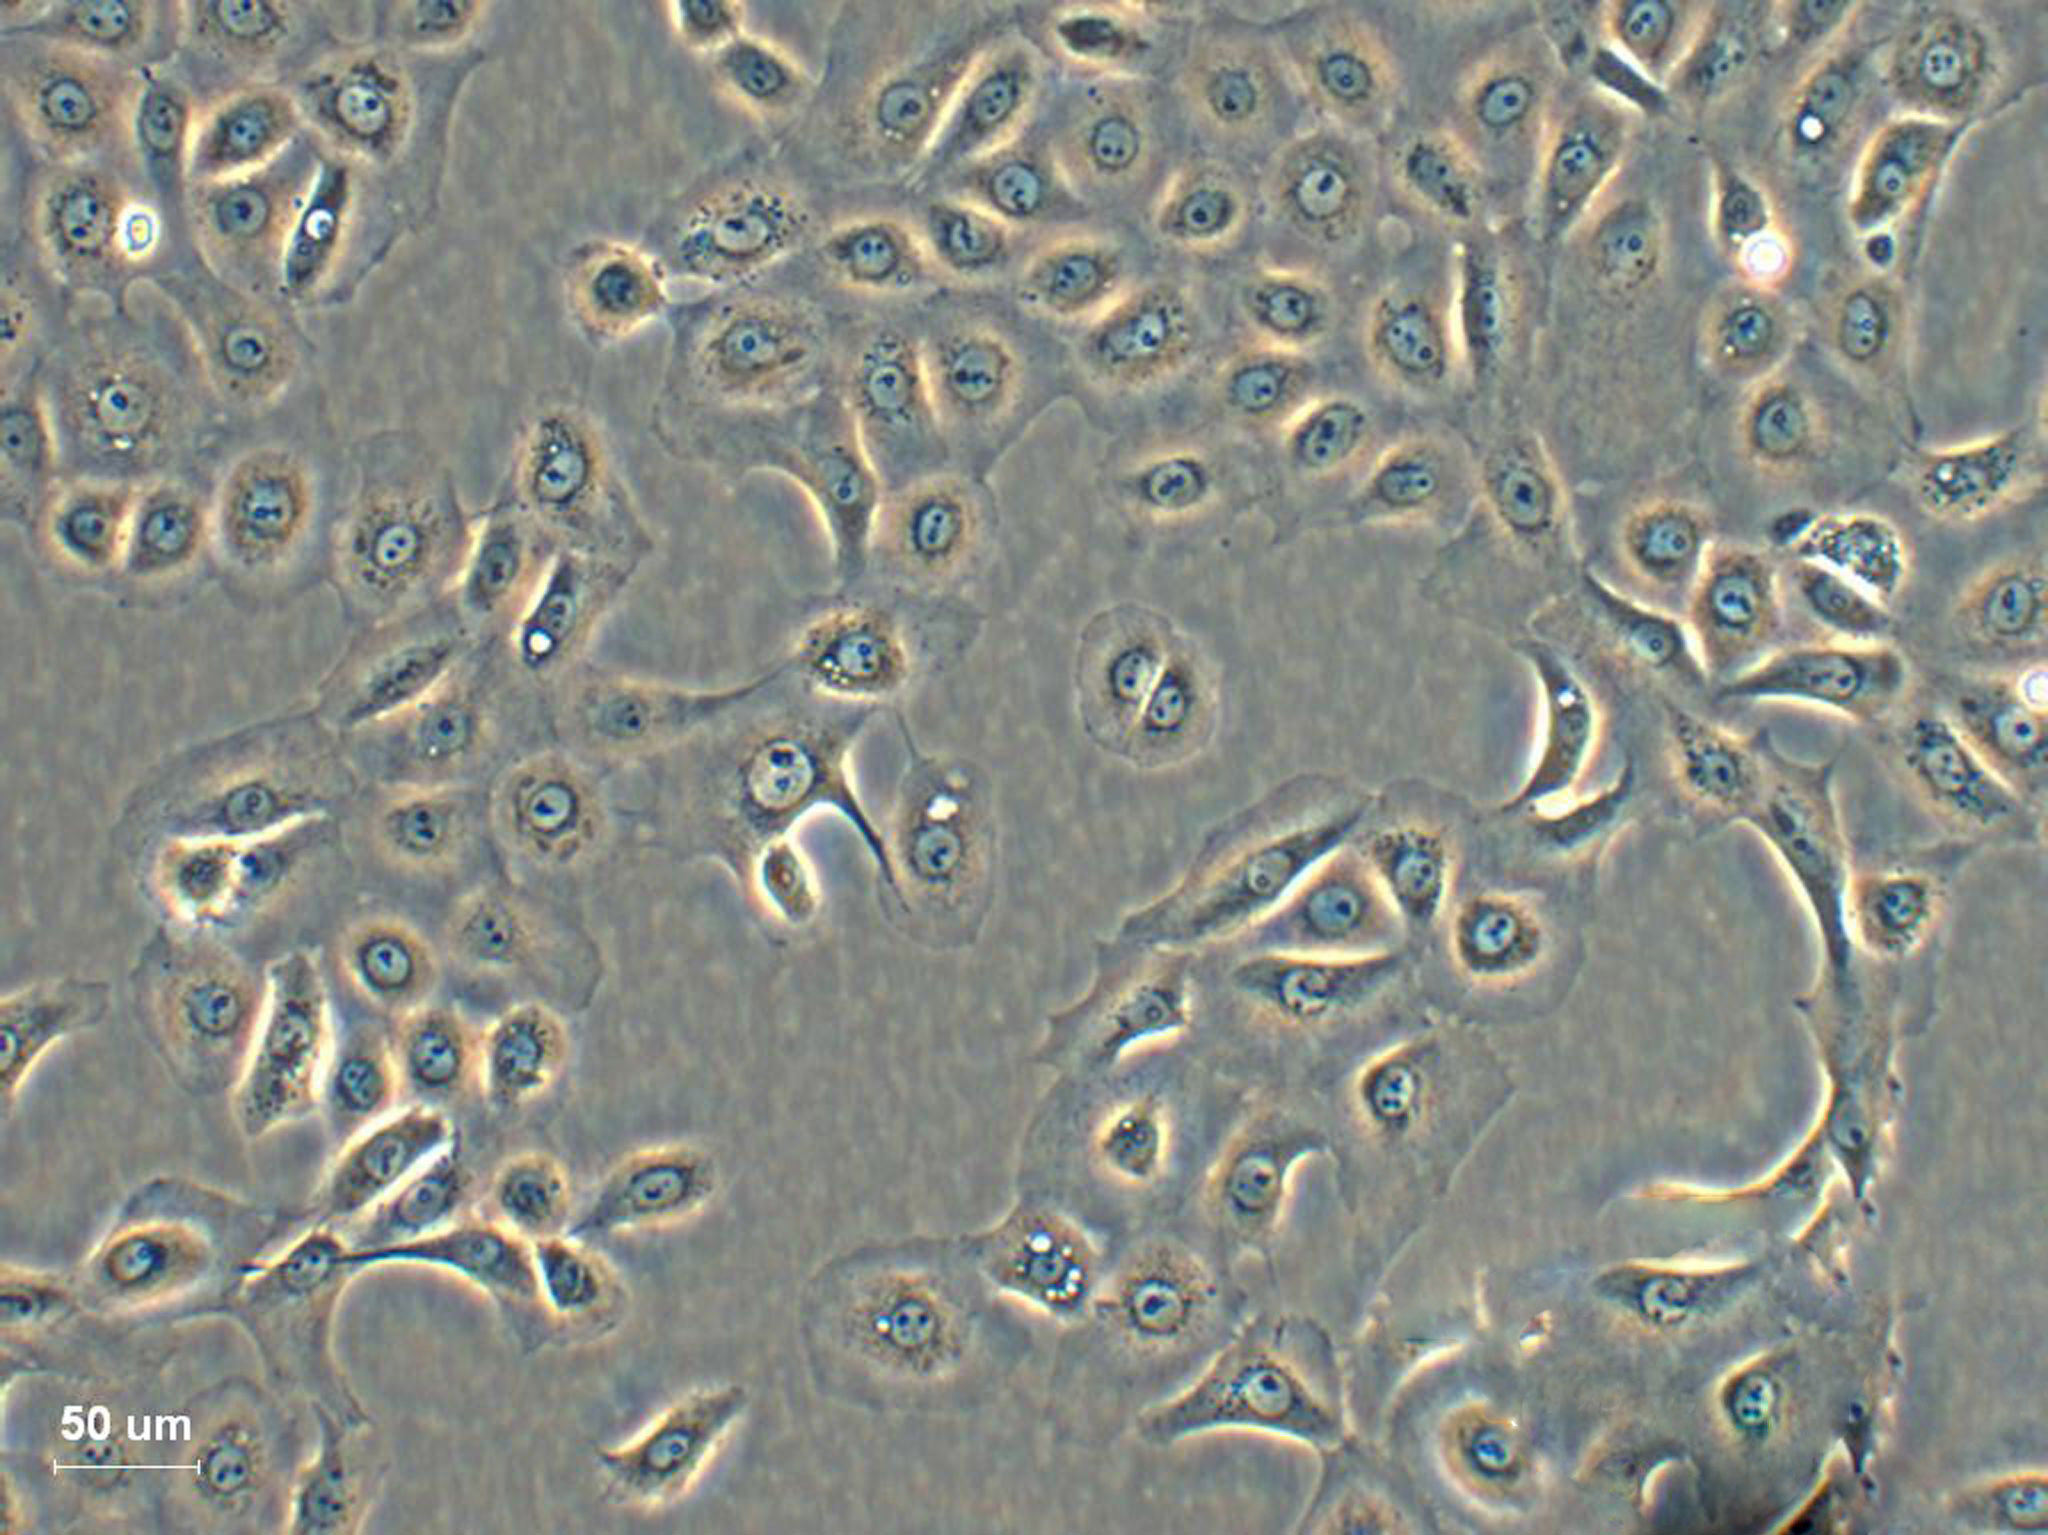 MS1 小鼠胰岛内皮细胞系